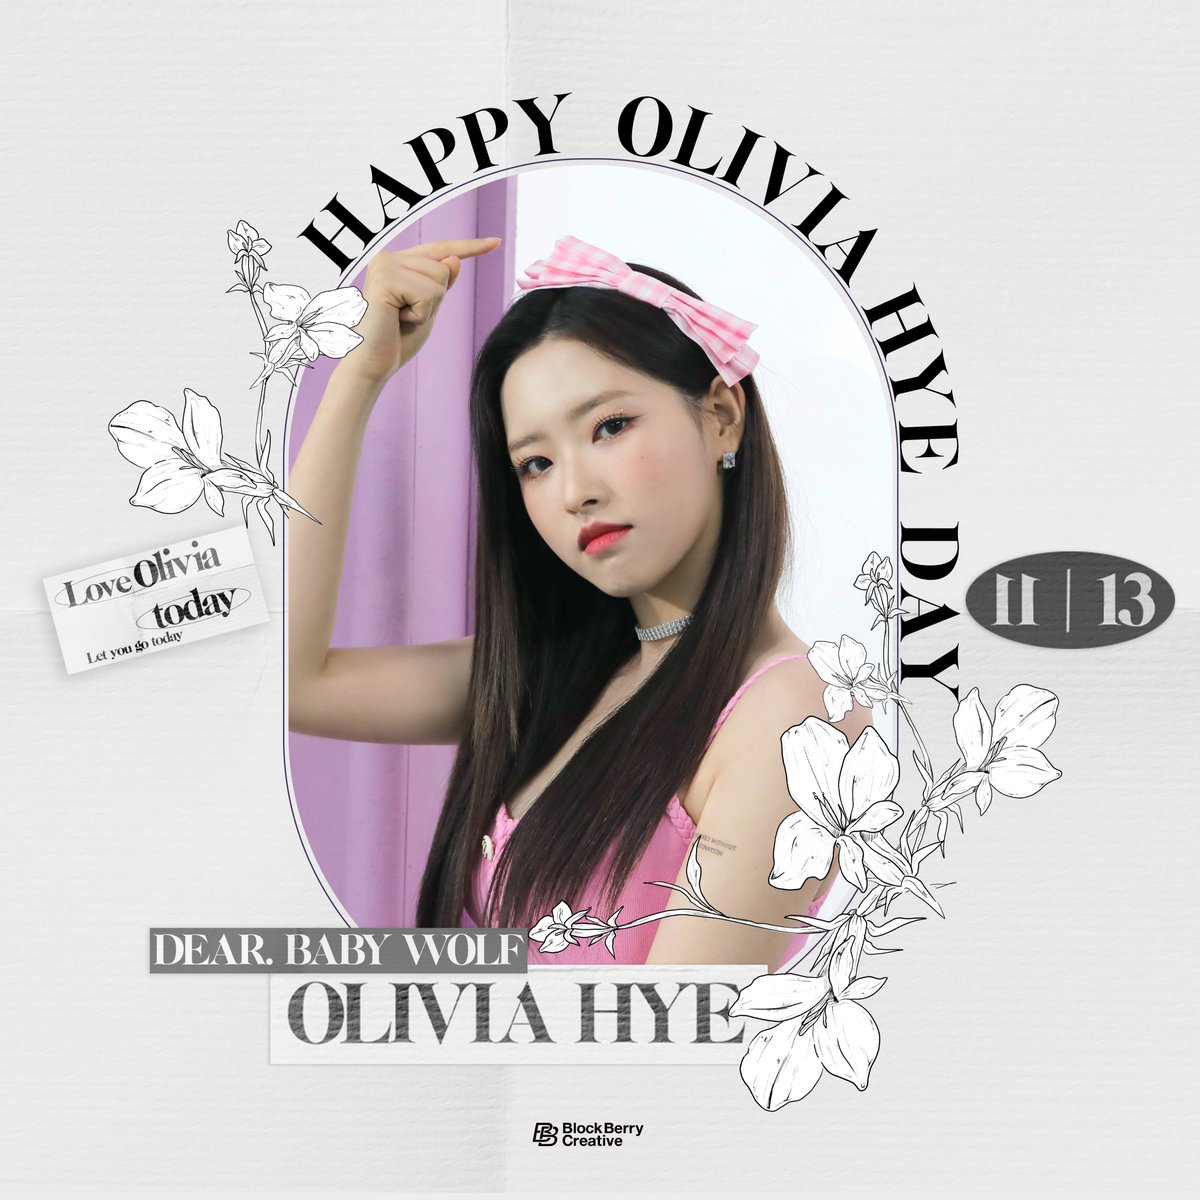 #1113_HBD_OliviaHye
#Happy_OliviaHye_Day

이달의 소녀의 아기늑대🐺
올리비아 혜의 생일을 축하합니다🖤

Baby wolf🐺of LOOΠΔ
Happy birthday to Olivia Hye🖤

#이달의소녀 #LOONA 
#OliviaHye